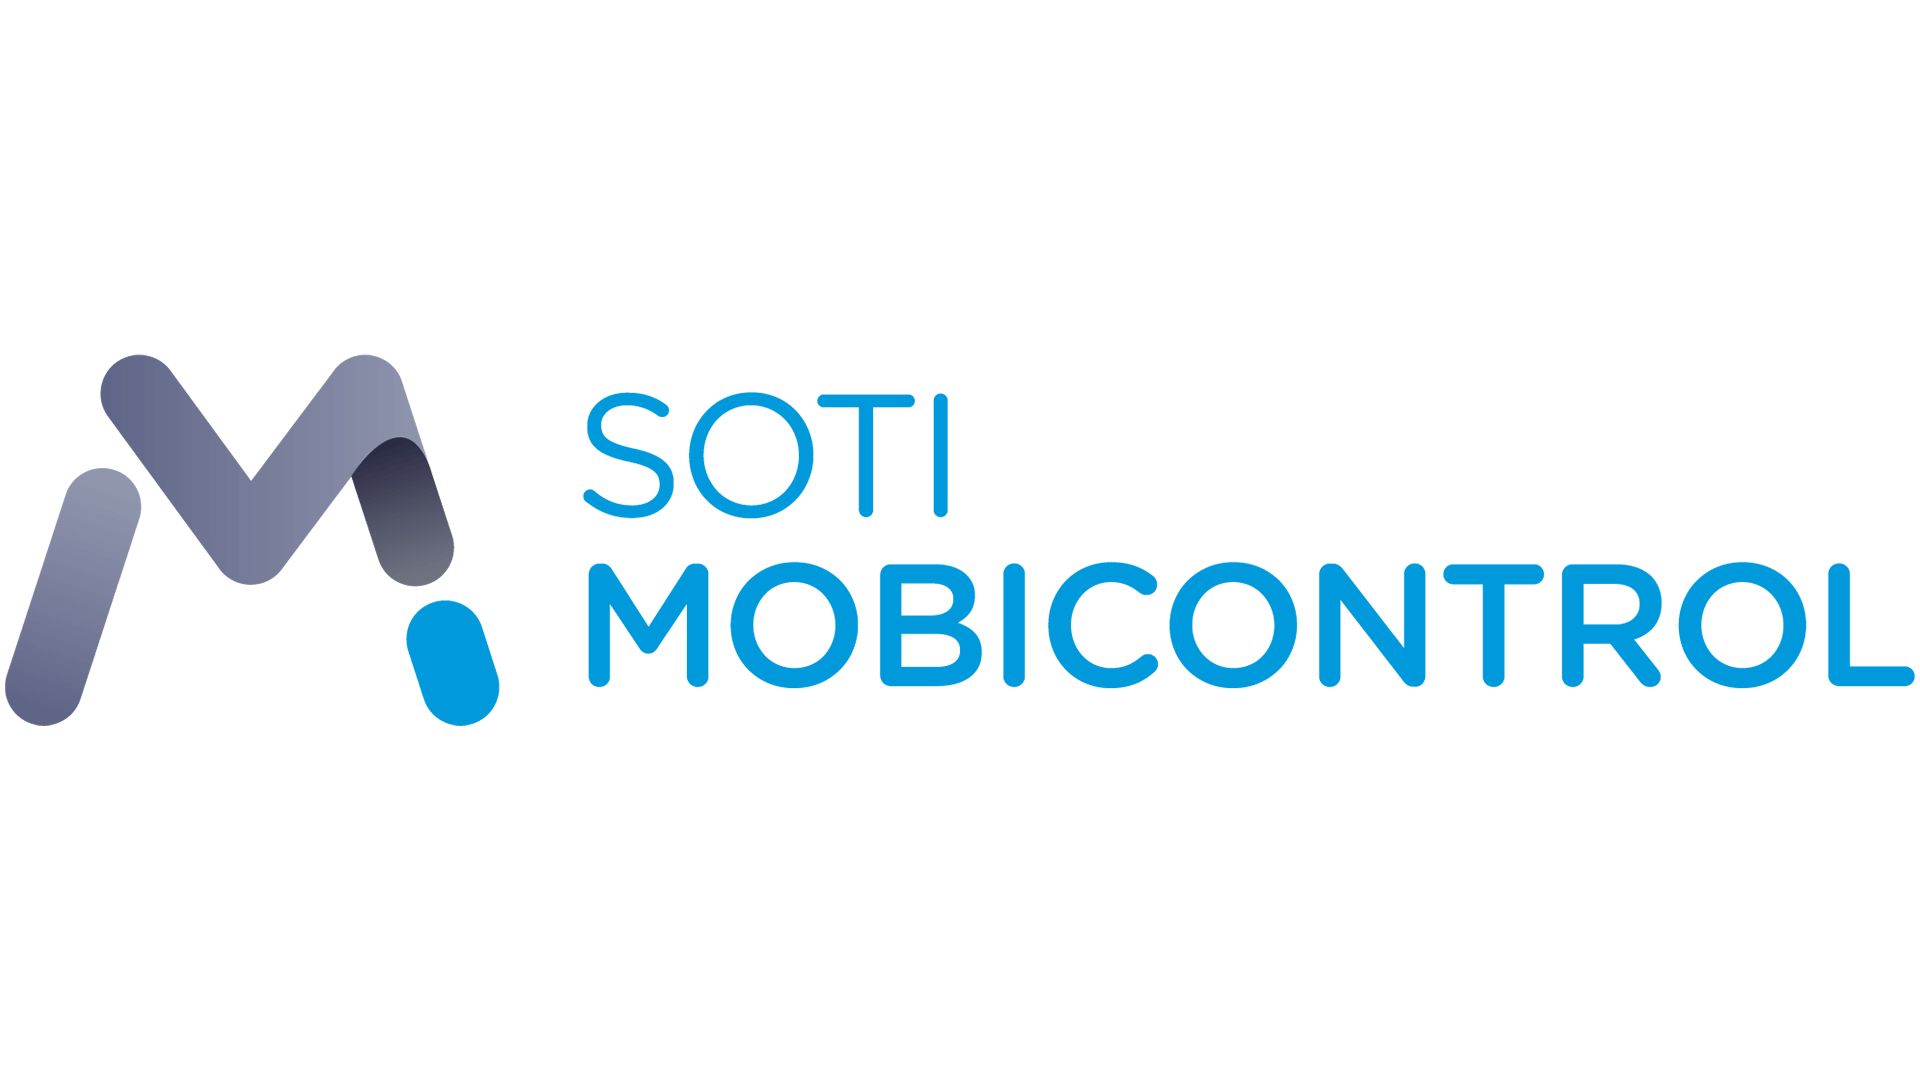 SOTI Mobicontrol